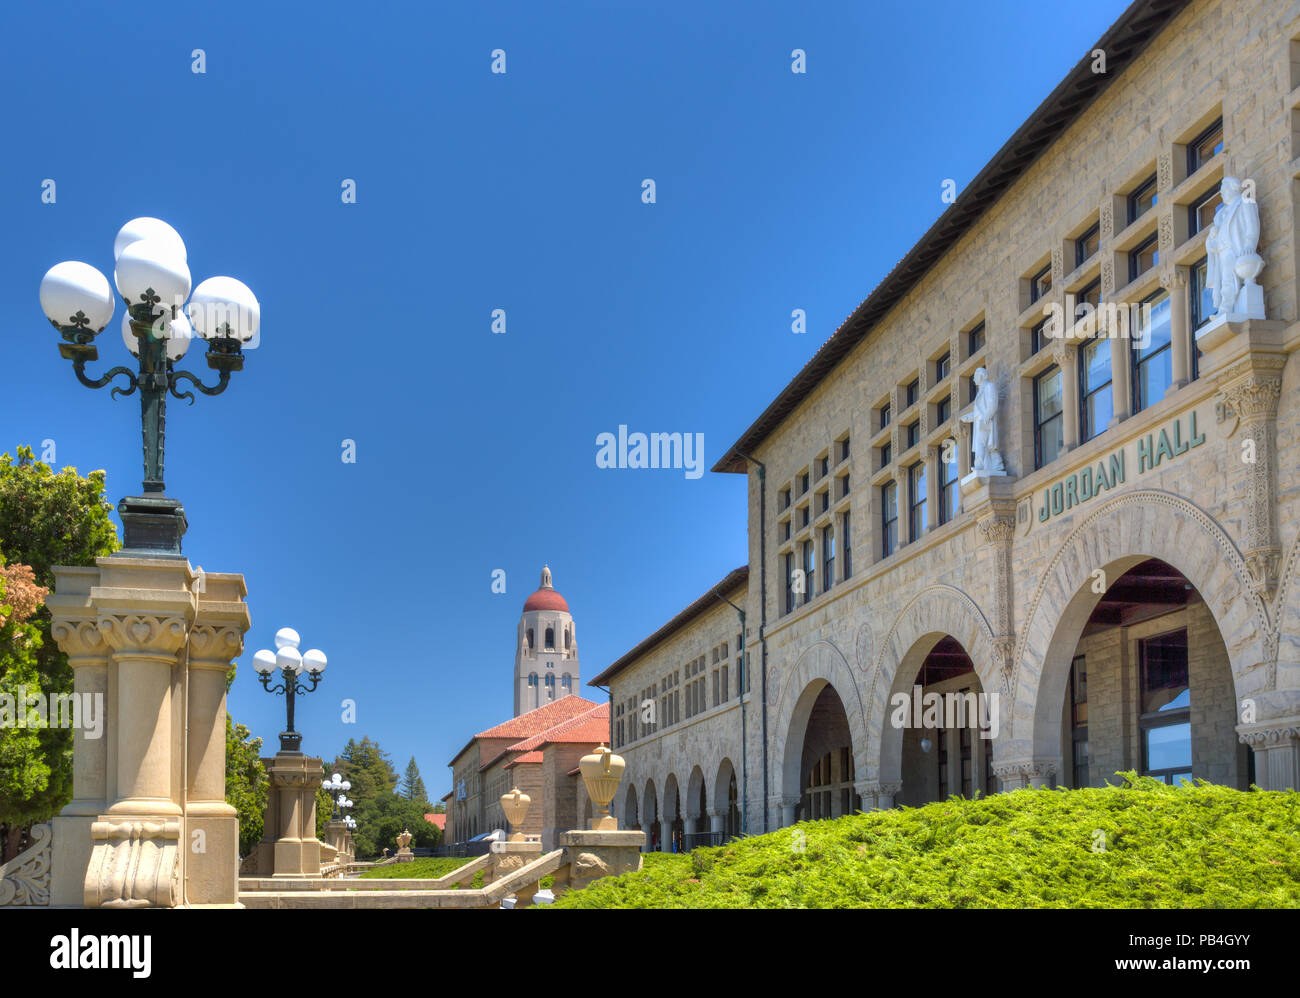 STANFORD, États-unis - 6 juillet : au fond de la tour historique de Hoover, Jordan Hall sur le campus de l'Université de Stanford. Le 6 juillet 2013. Banque D'Images